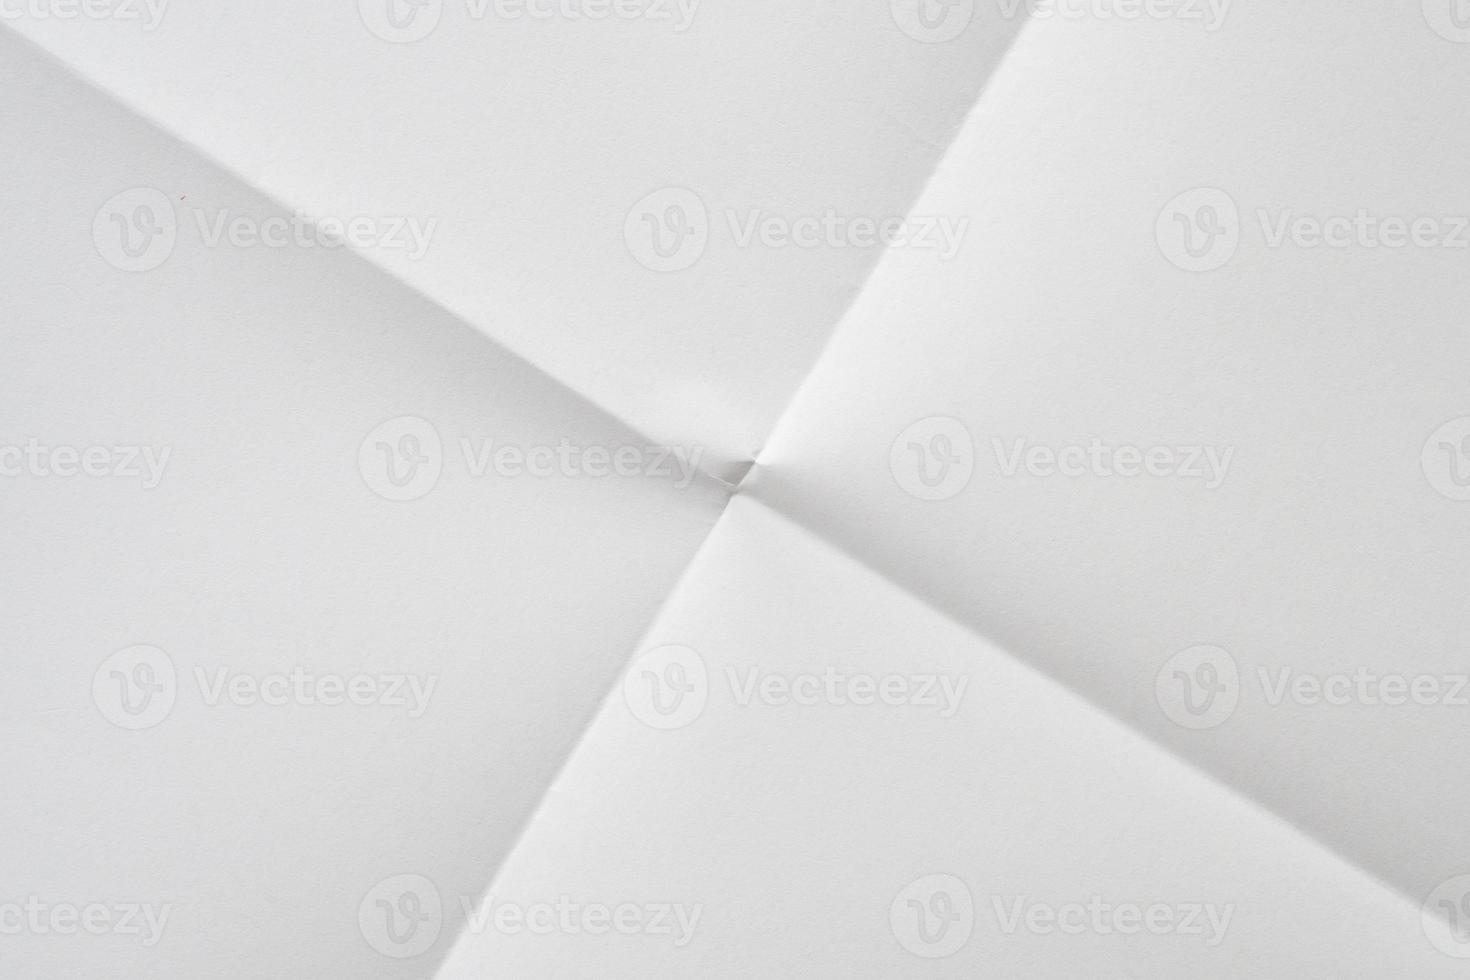 vit vikta och rynkig papper textur bakgrund foto